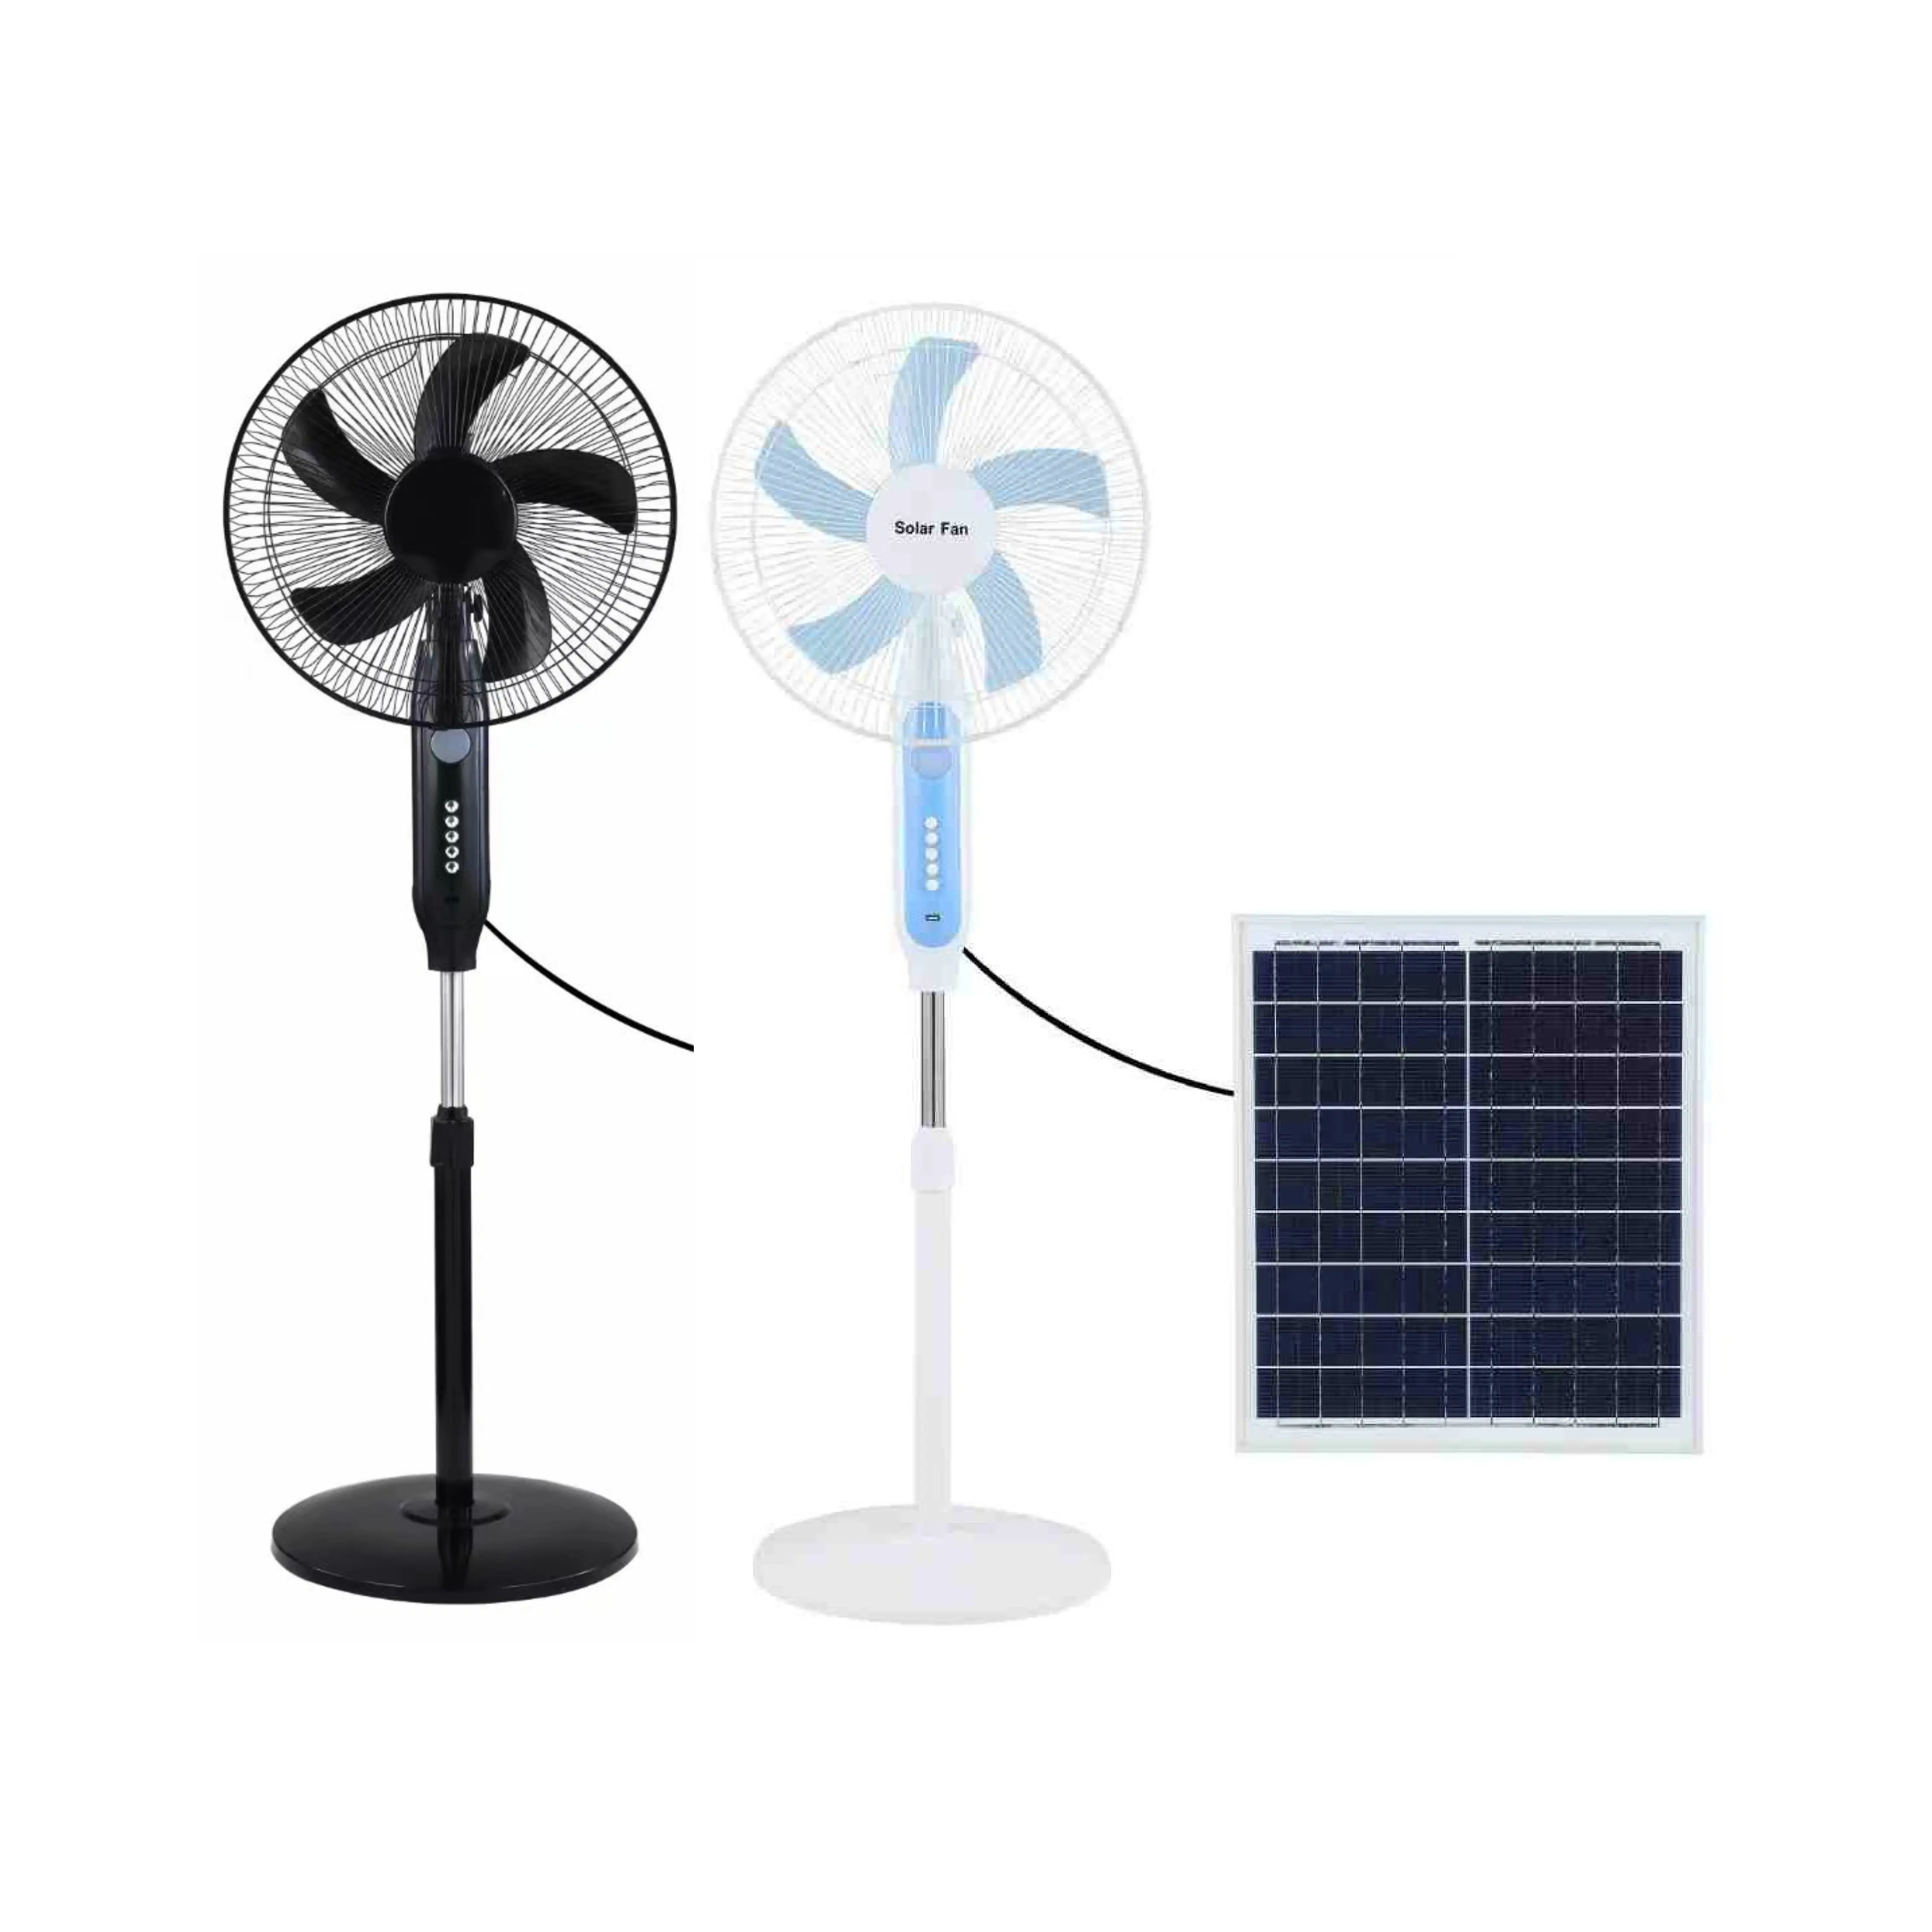 3 передачи 16 дюймов 5 лопастей перезаряжаемые домашние солнечные вентиляторы перезаряжаемый электрический вентилятор